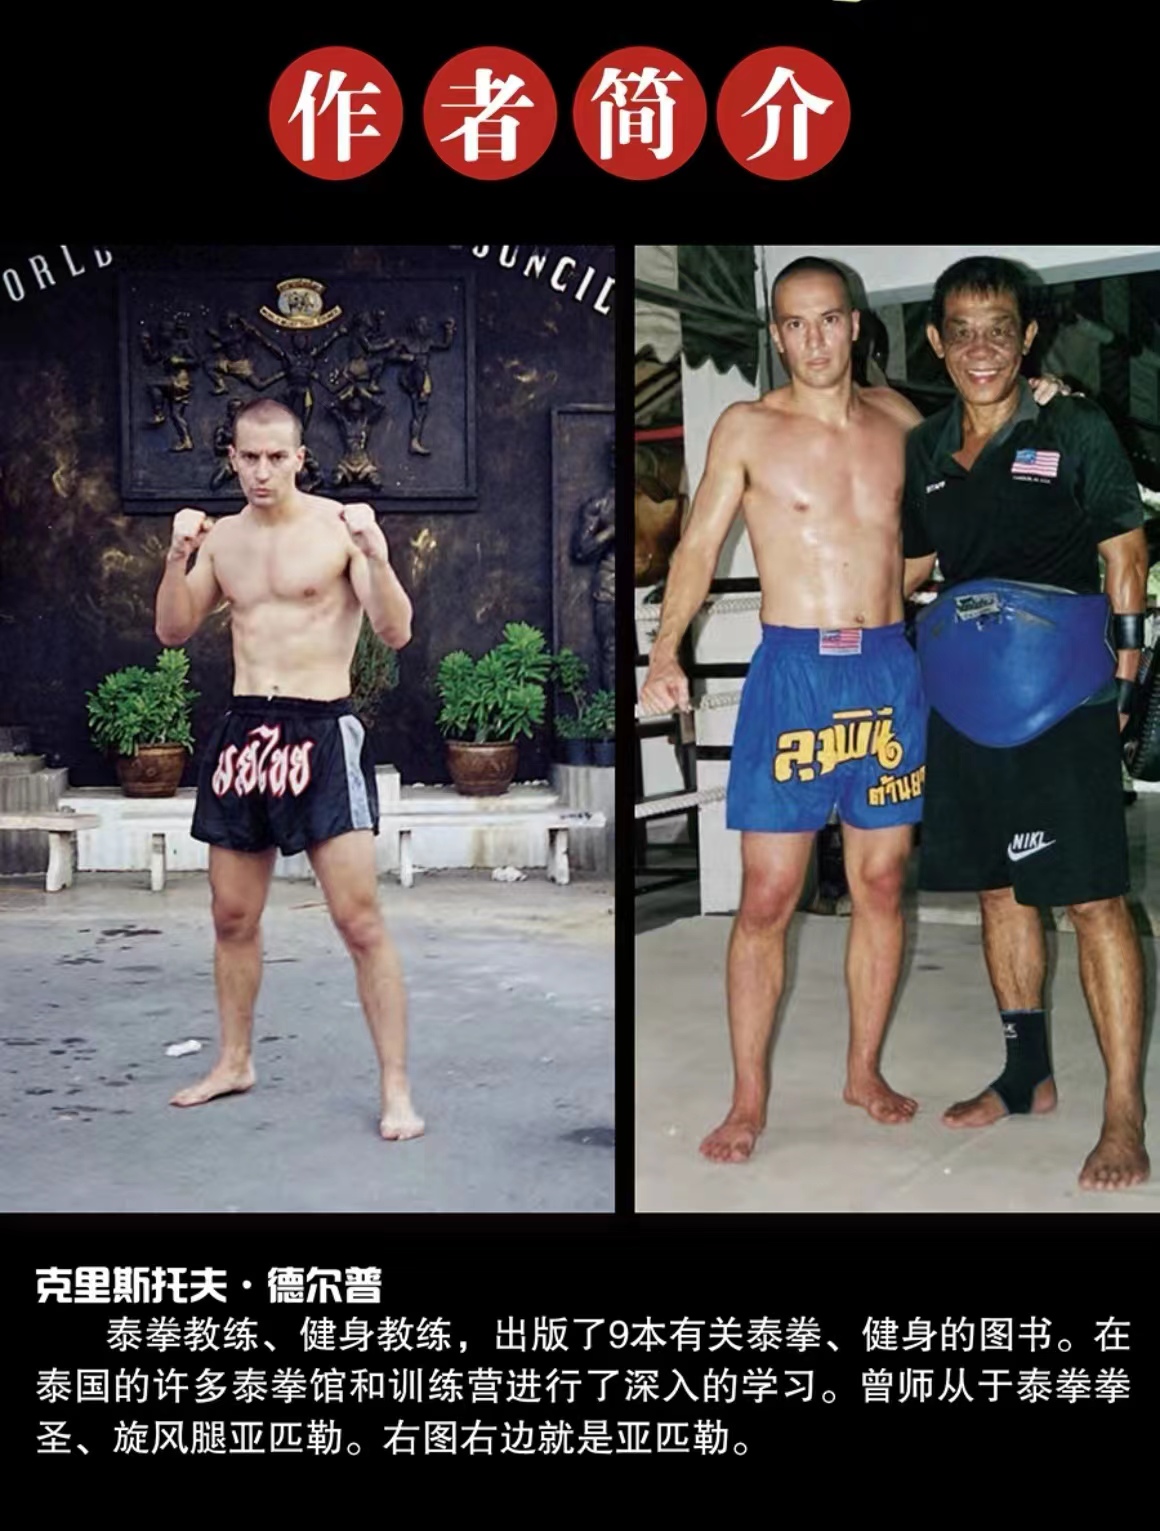 张成龙希望在和秋元皓贵的比赛中展现“中国勇士精神” - ONE Championship – The Home Of Martial Arts